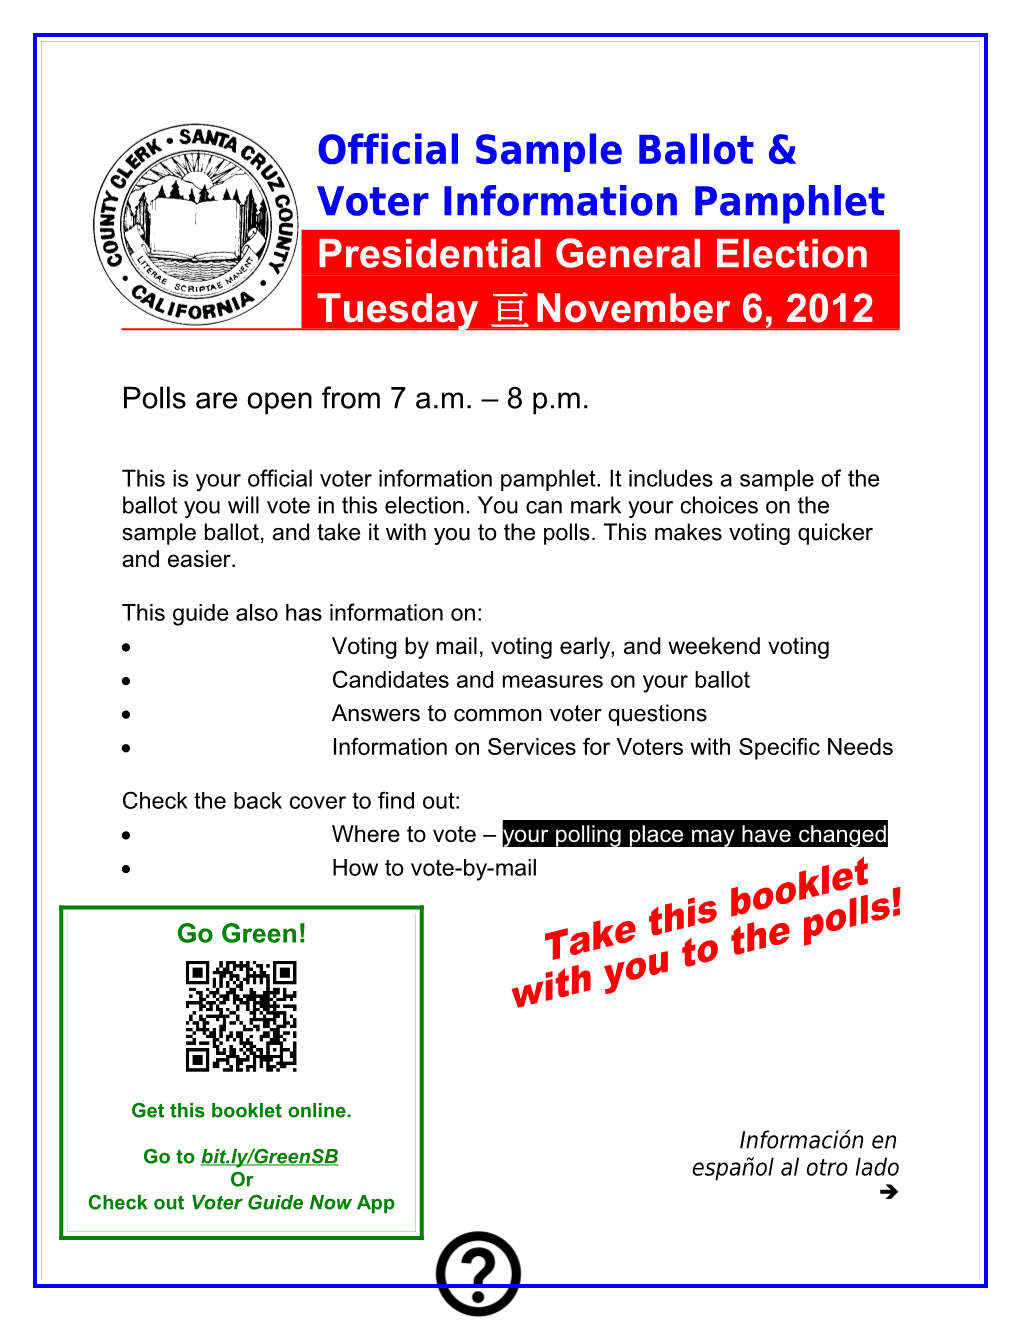 Official Voter Information Pamphlet